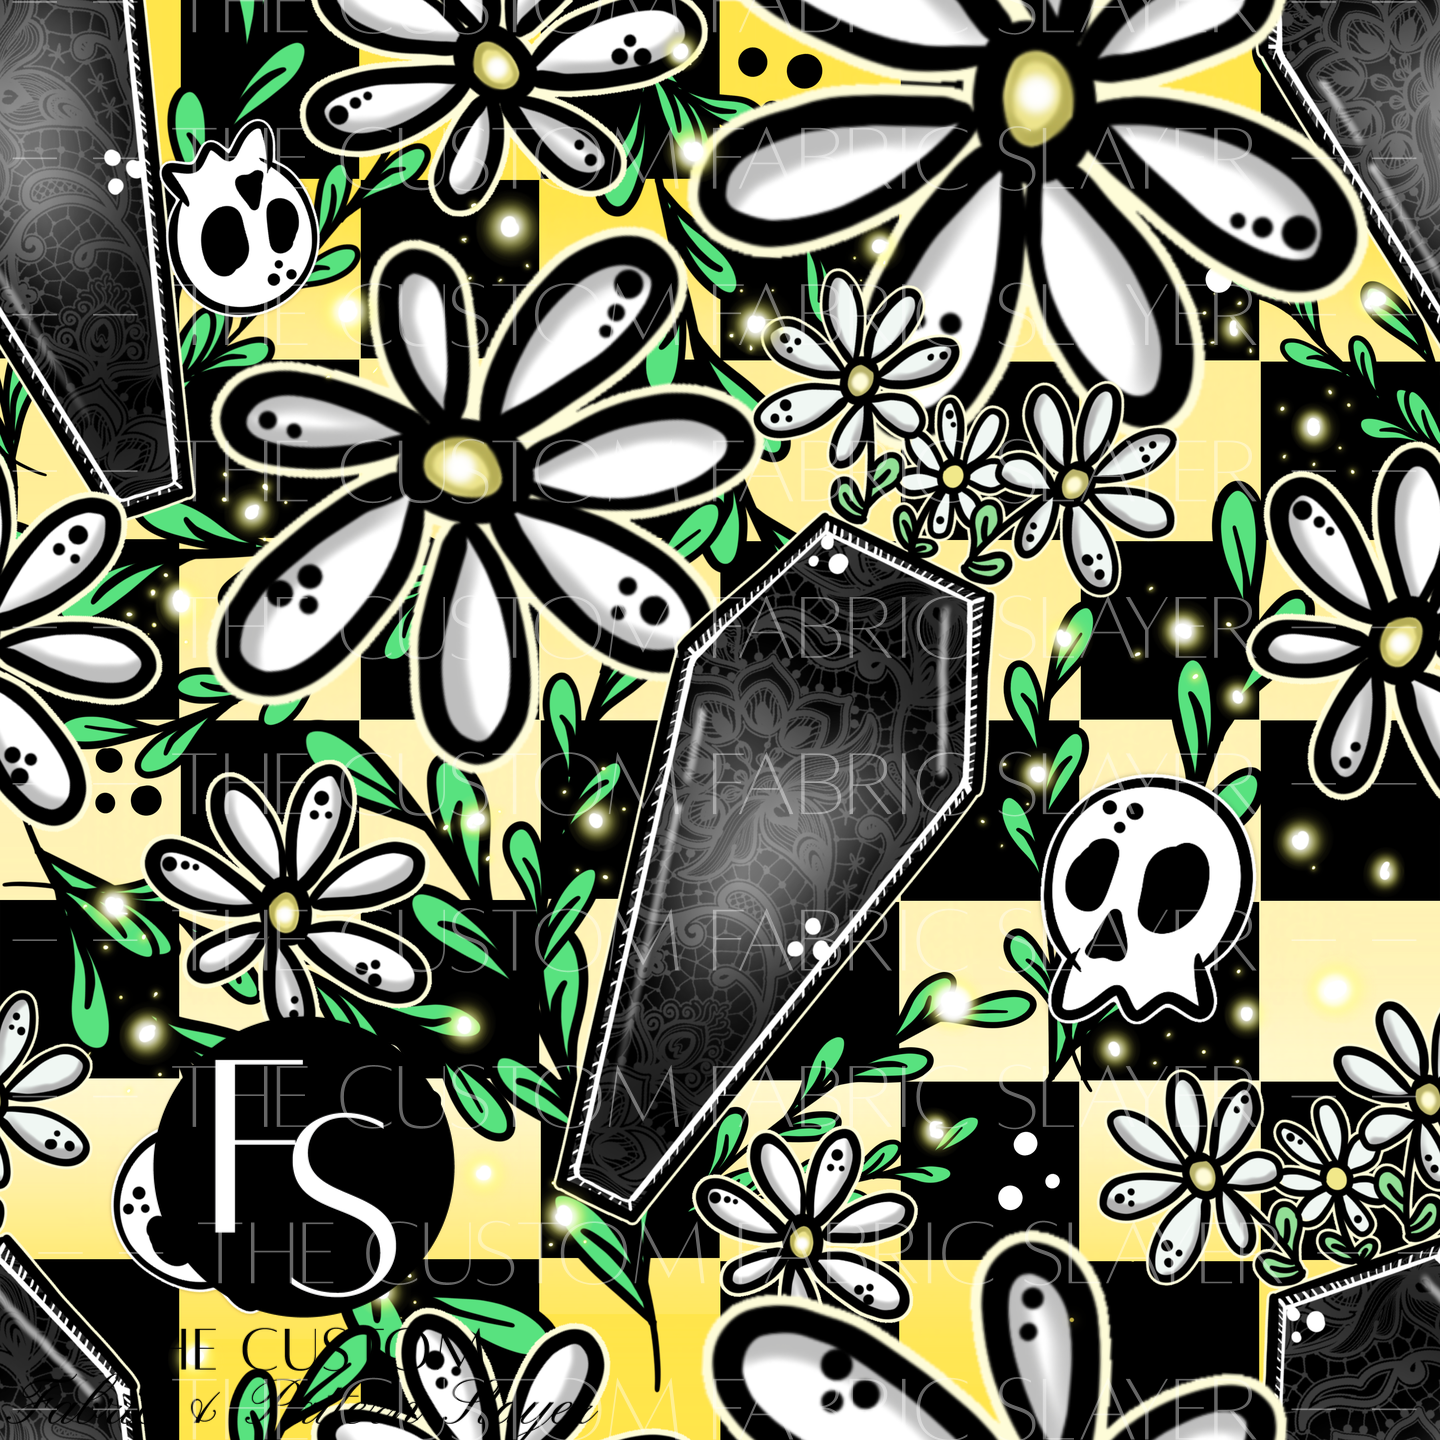 Coffin Flowers - ILLUMINATEDINKDIGITALS